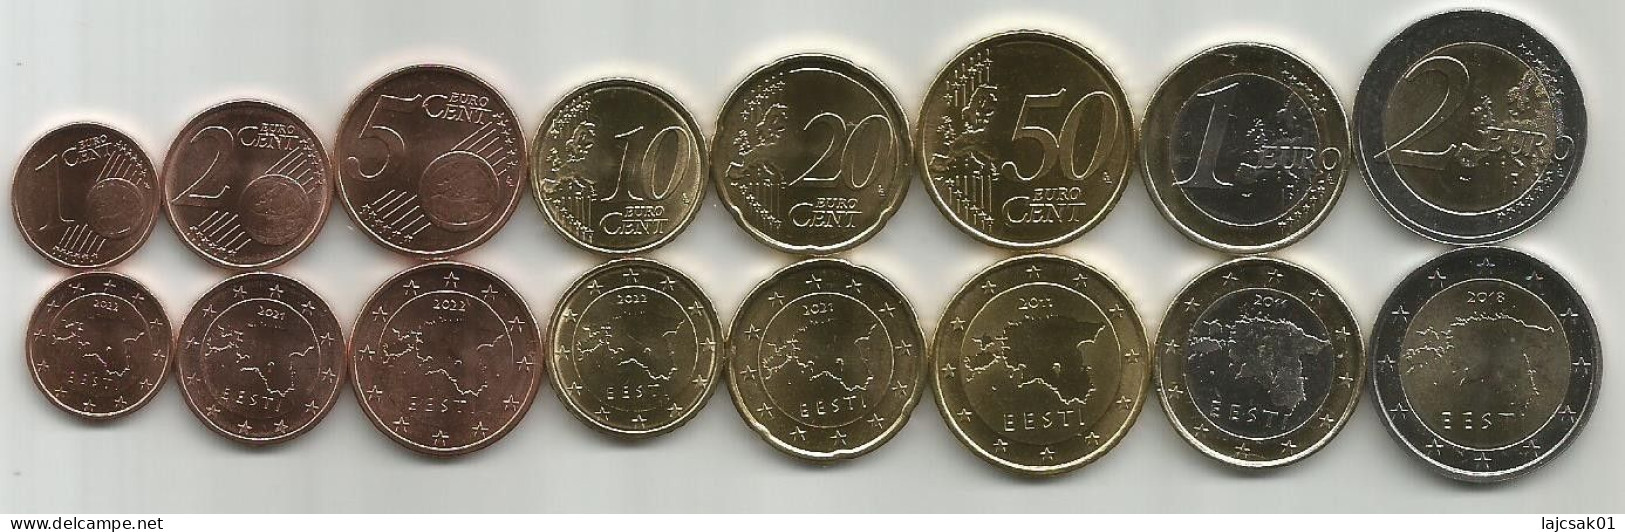 Estonia 2011 - 2022. High Grade Coin Set - Estland